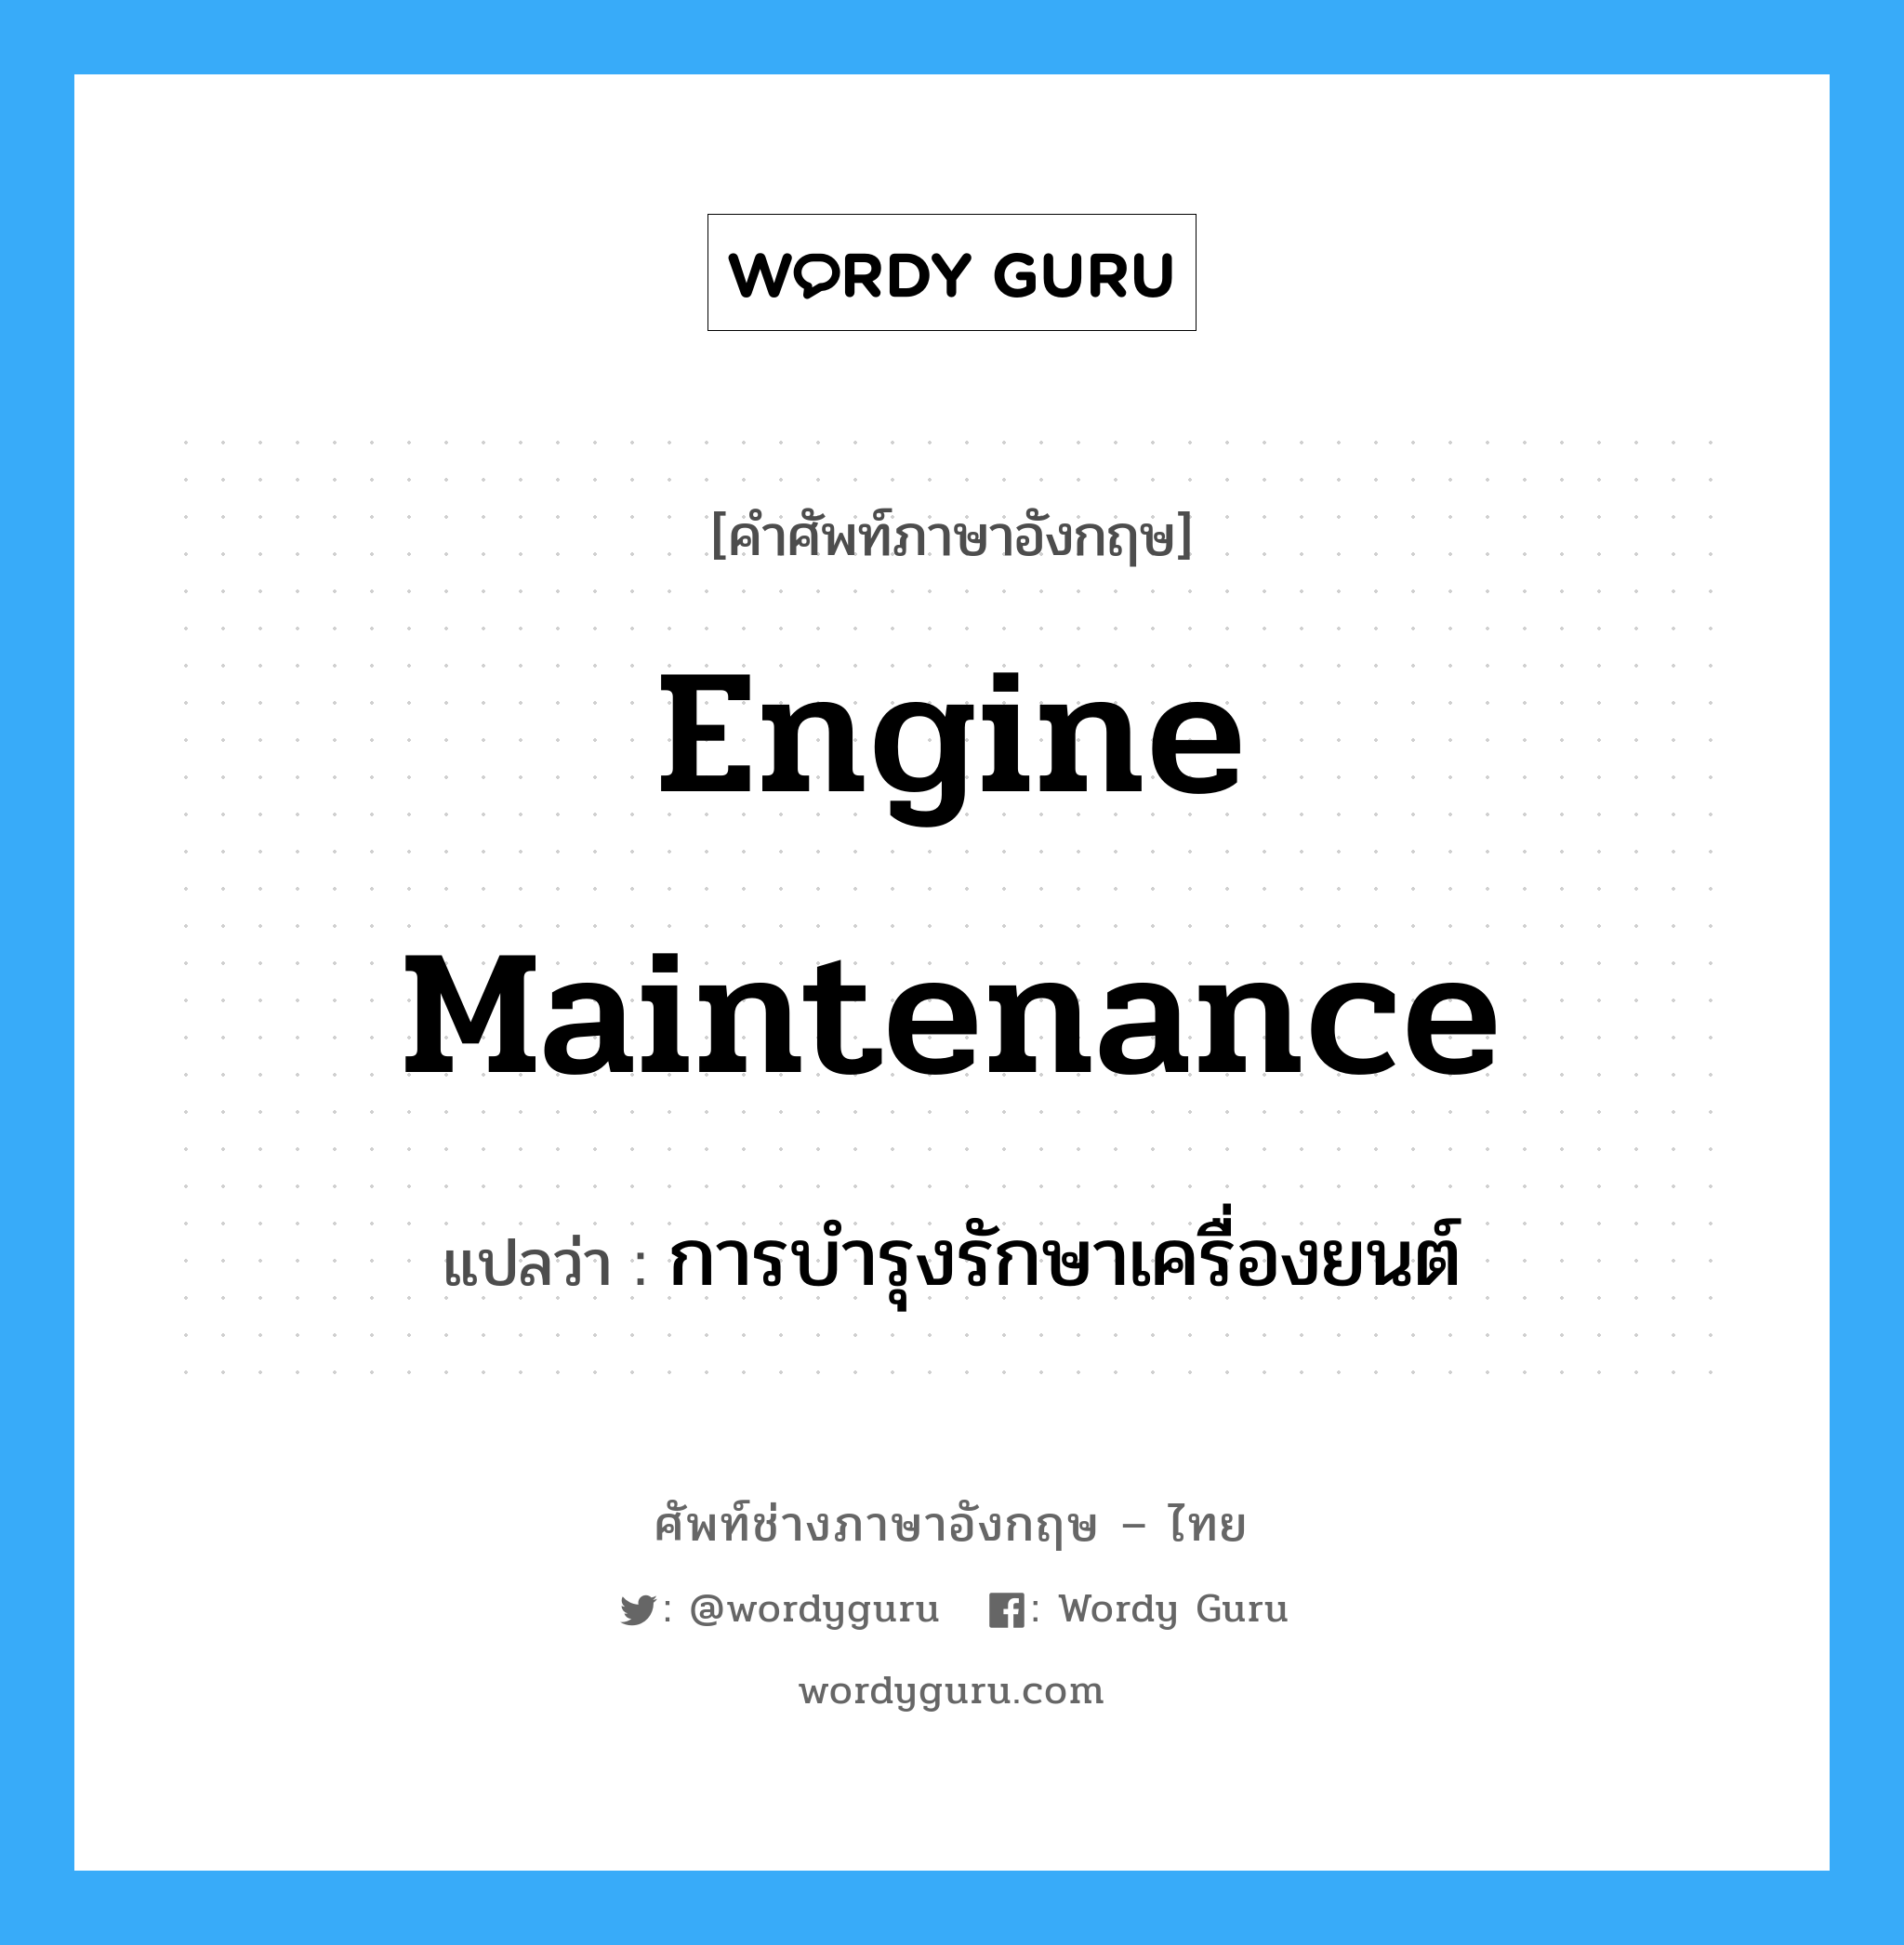 การบำรุงรักษาเครื่องยนต์ ภาษาอังกฤษ?, คำศัพท์ช่างภาษาอังกฤษ - ไทย การบำรุงรักษาเครื่องยนต์ คำศัพท์ภาษาอังกฤษ การบำรุงรักษาเครื่องยนต์ แปลว่า engine maintenance